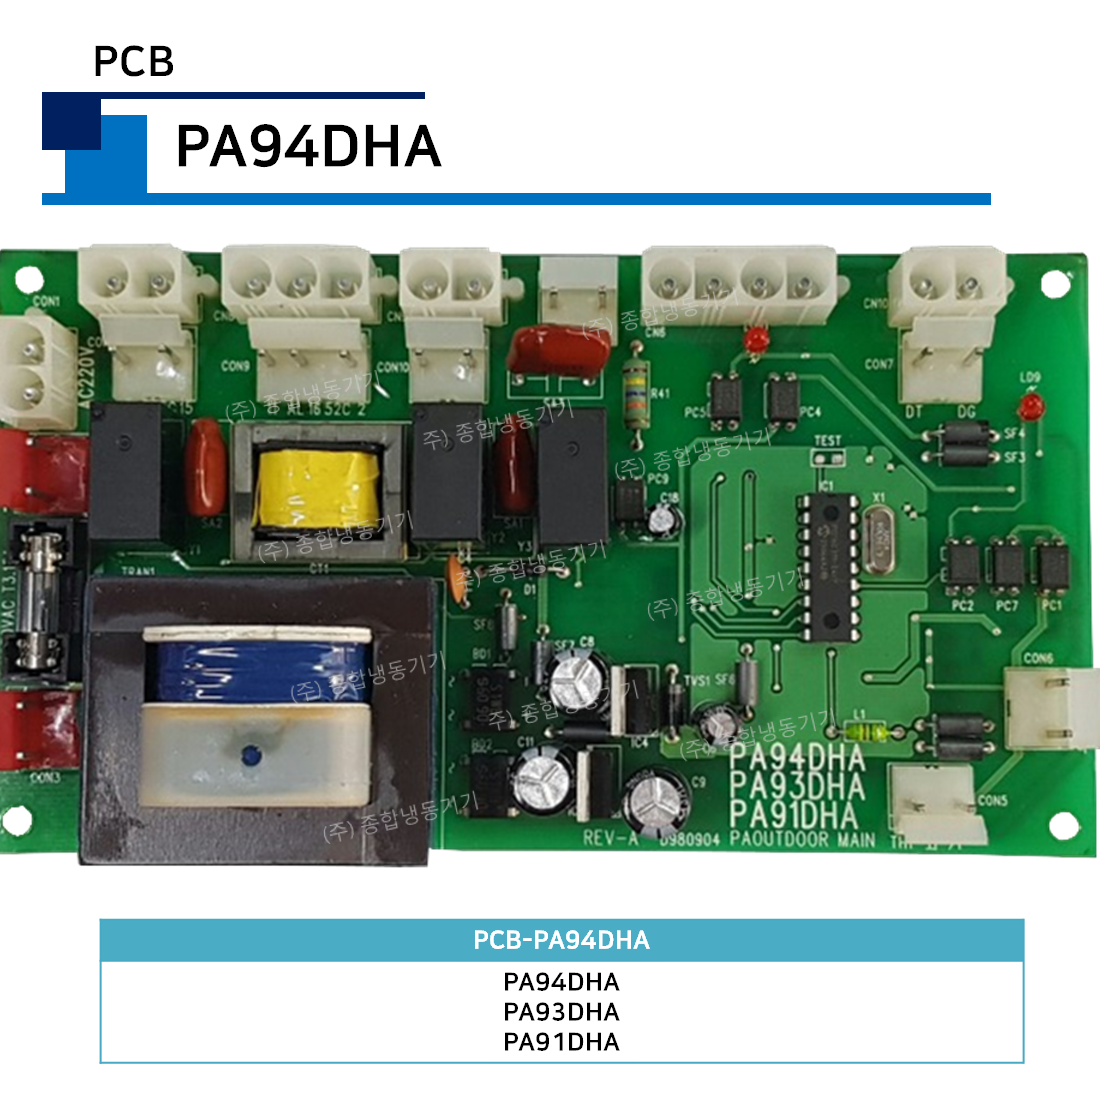 PCB-PA94DHA